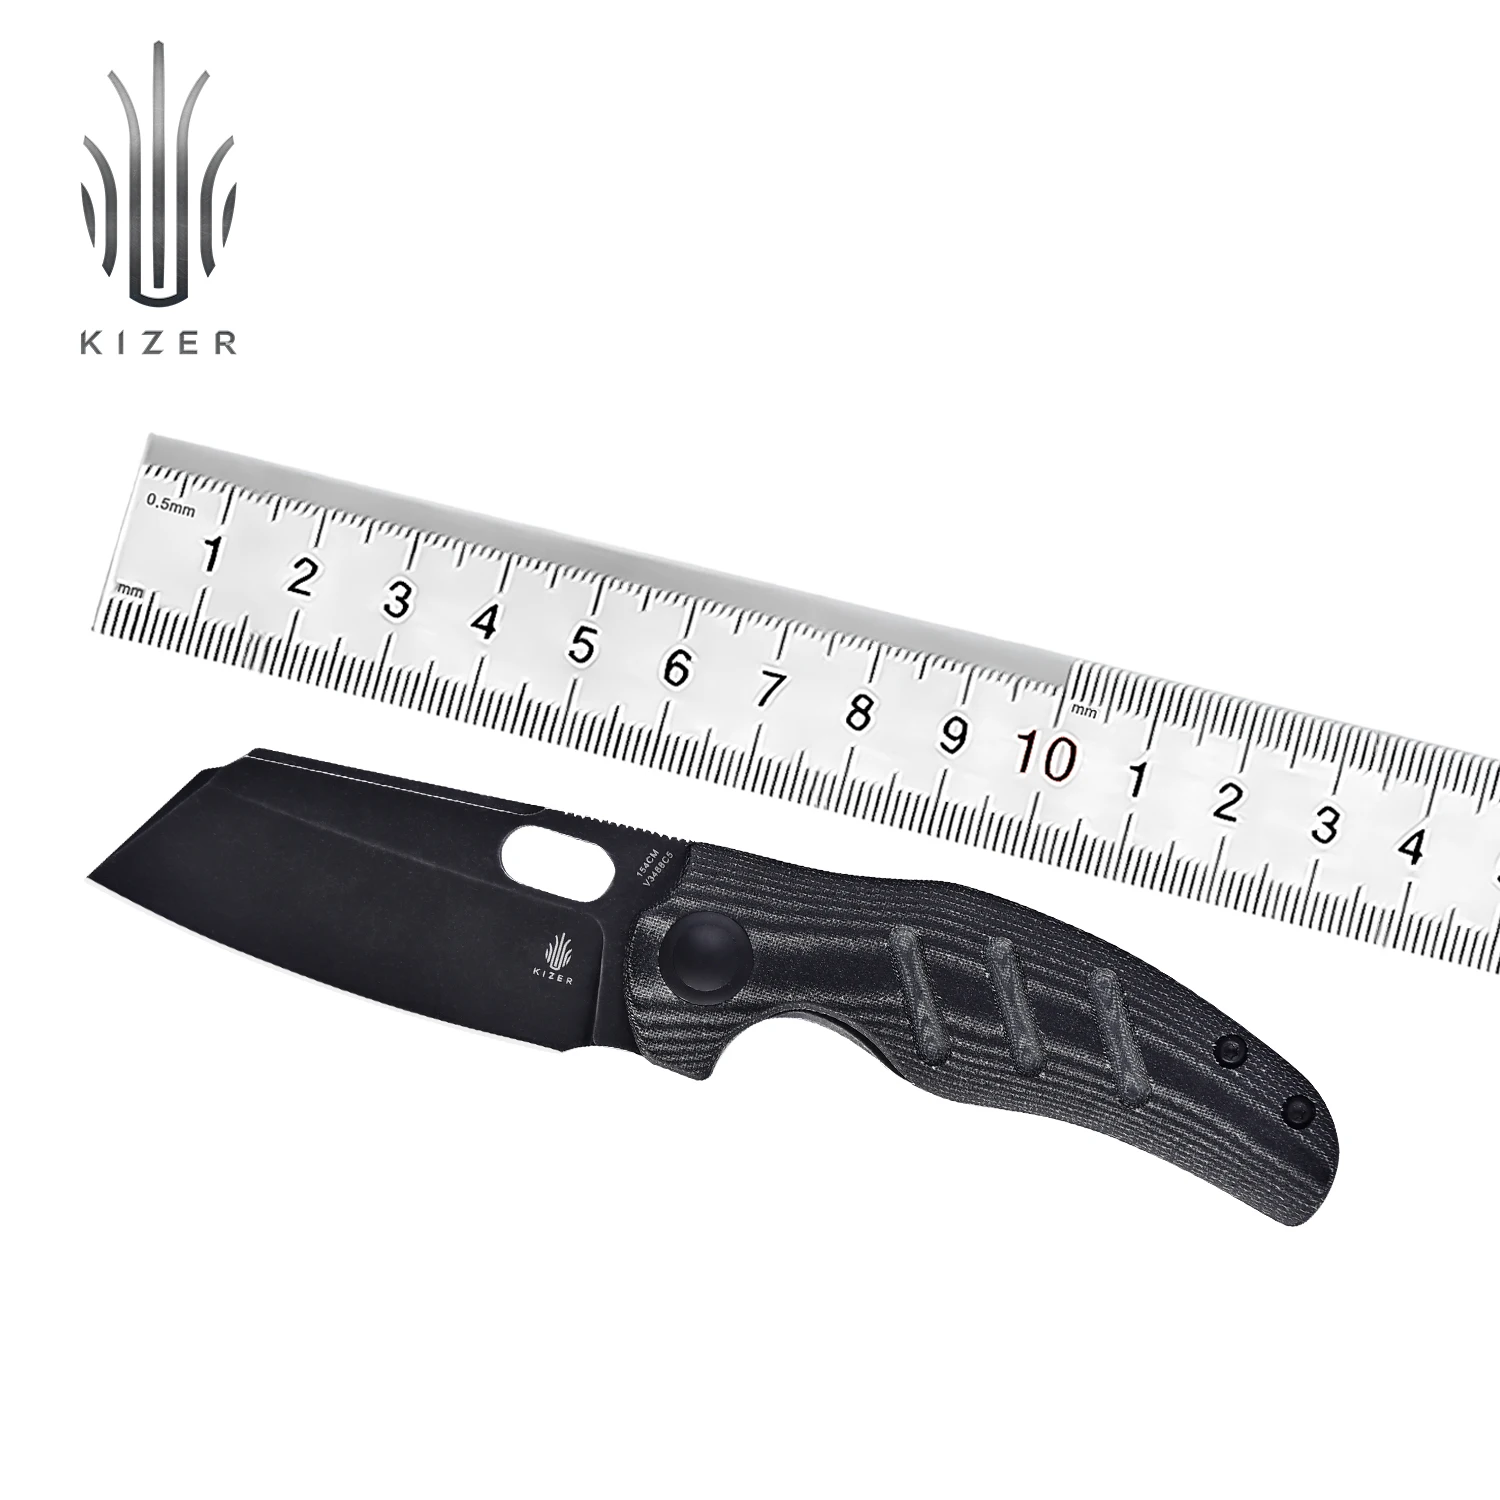 kizer-folding-blade-knife-v3488c5-c01c-mini-2021-new-black-154cm-blade-micarta-handle-with-thumb-hole-opening-edc-knife